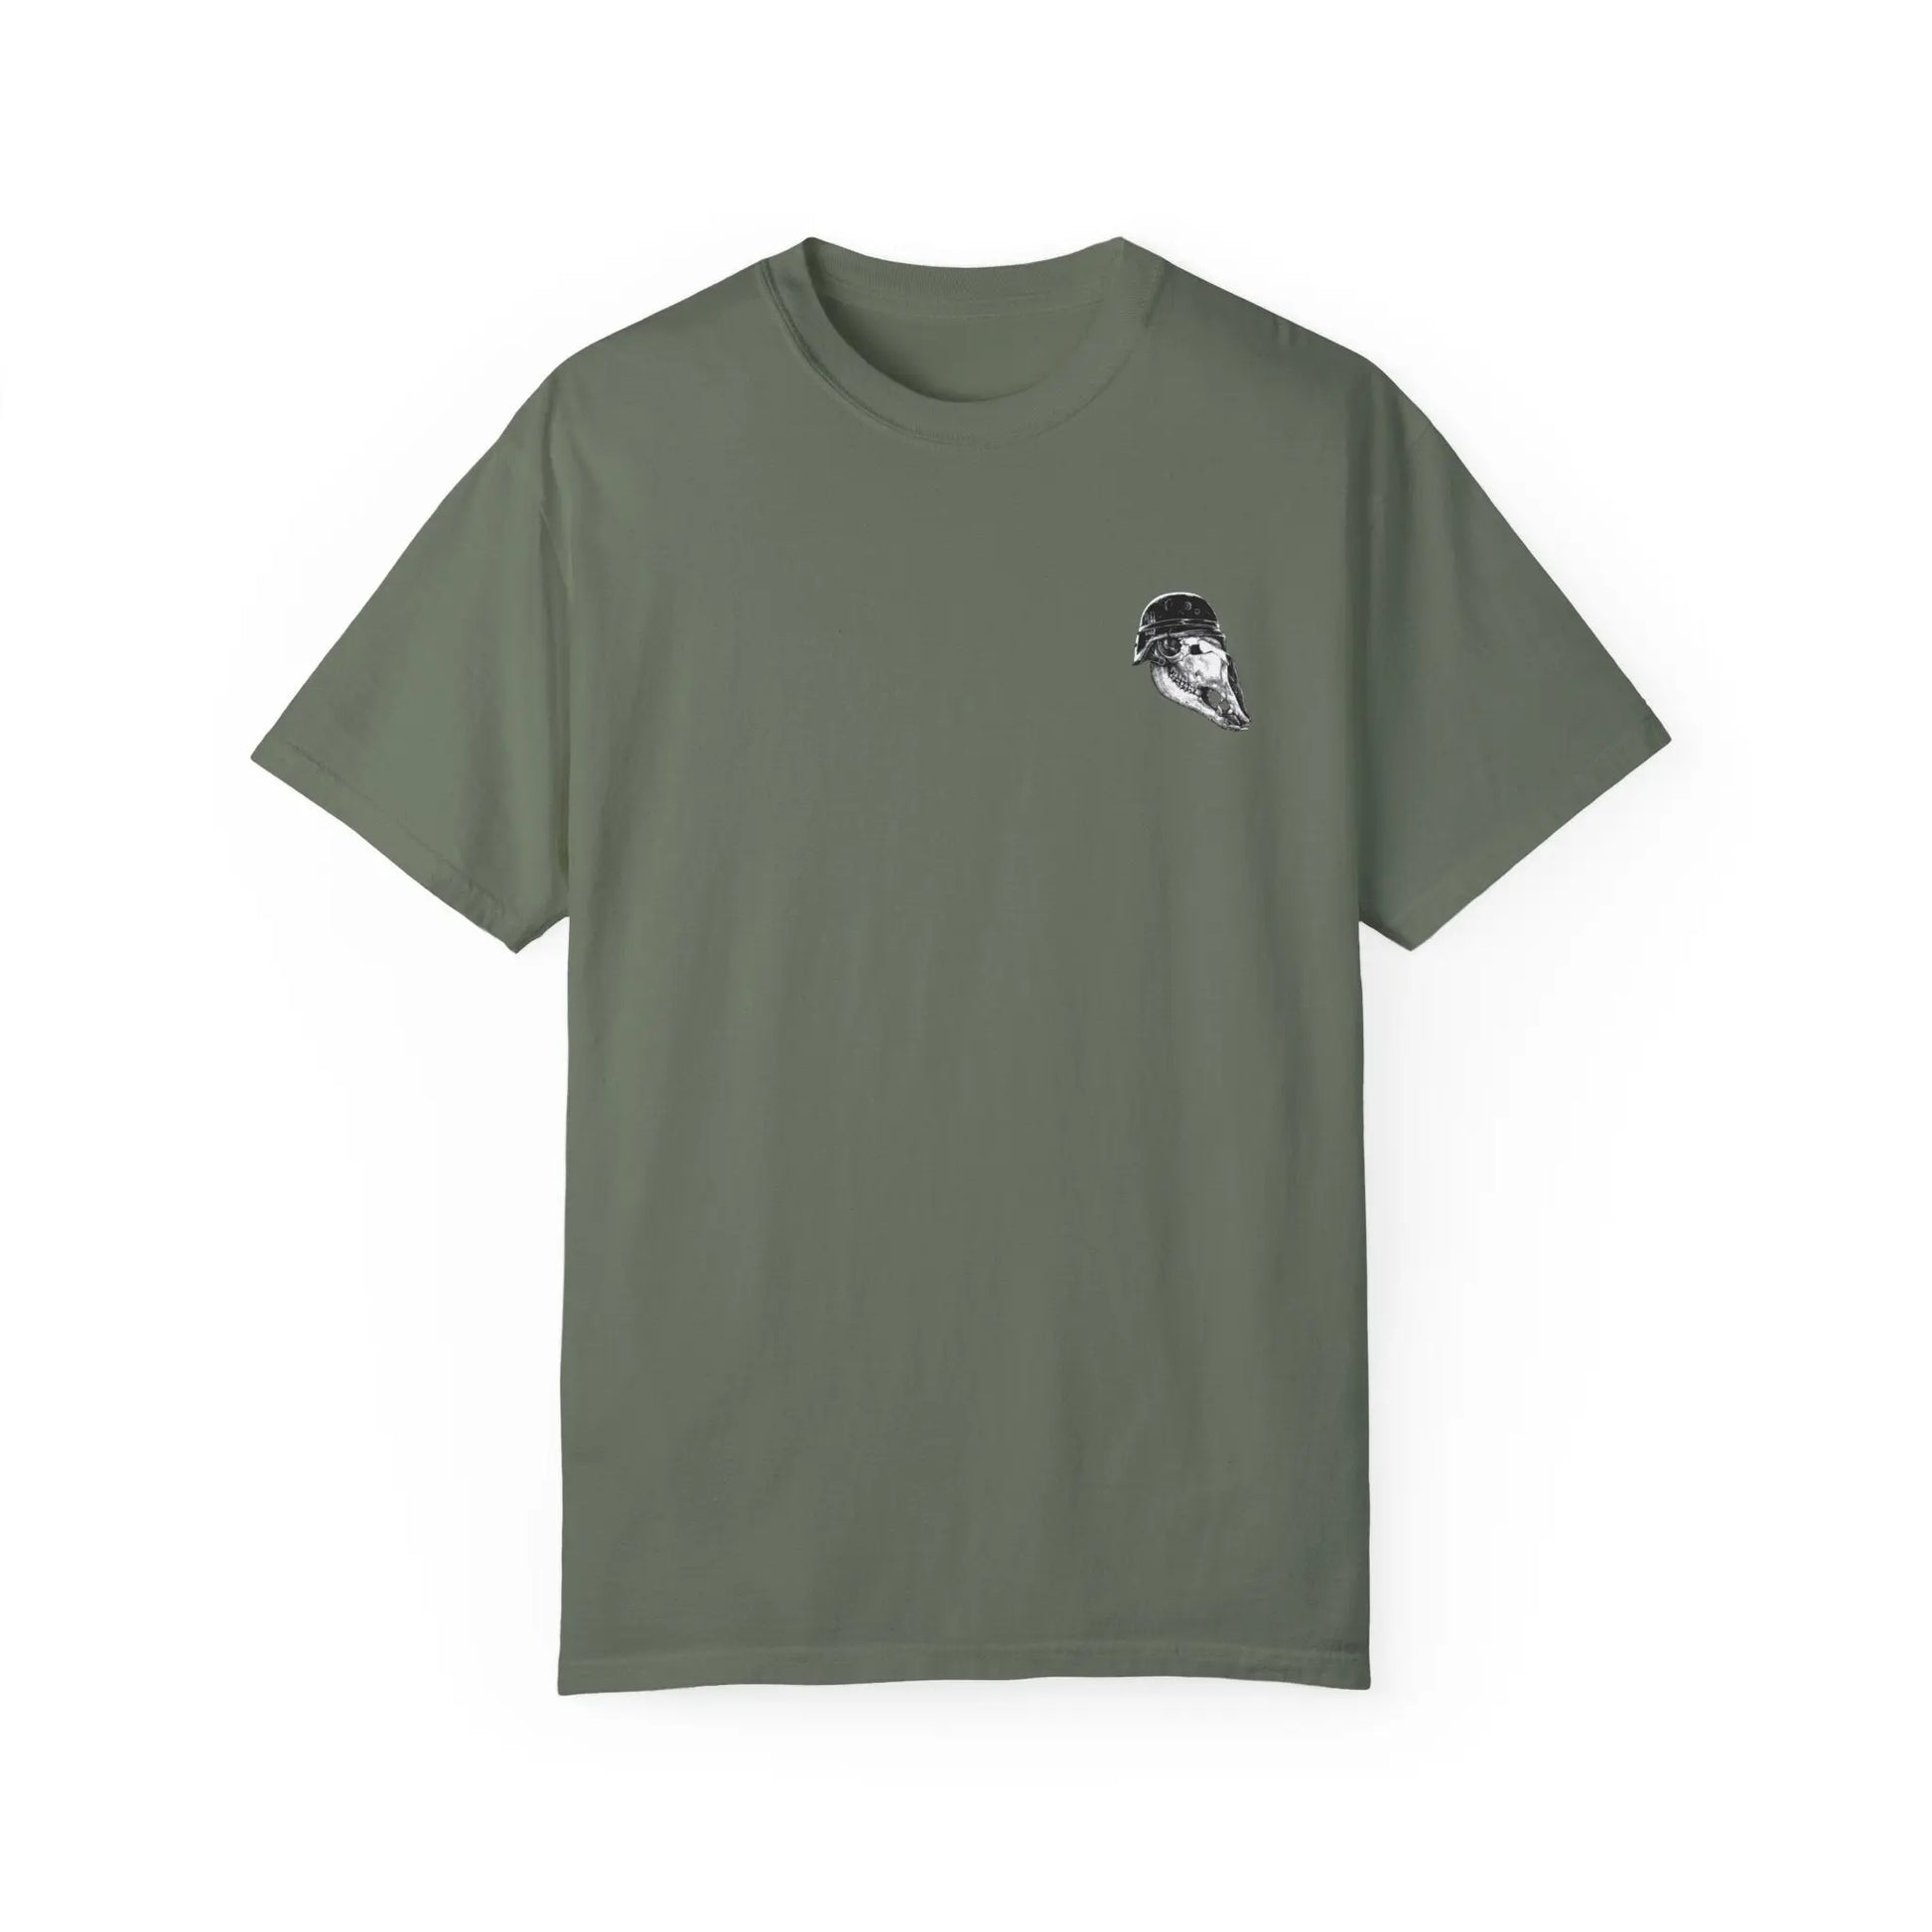 Belleau Wood (Shirt) Threat Llama